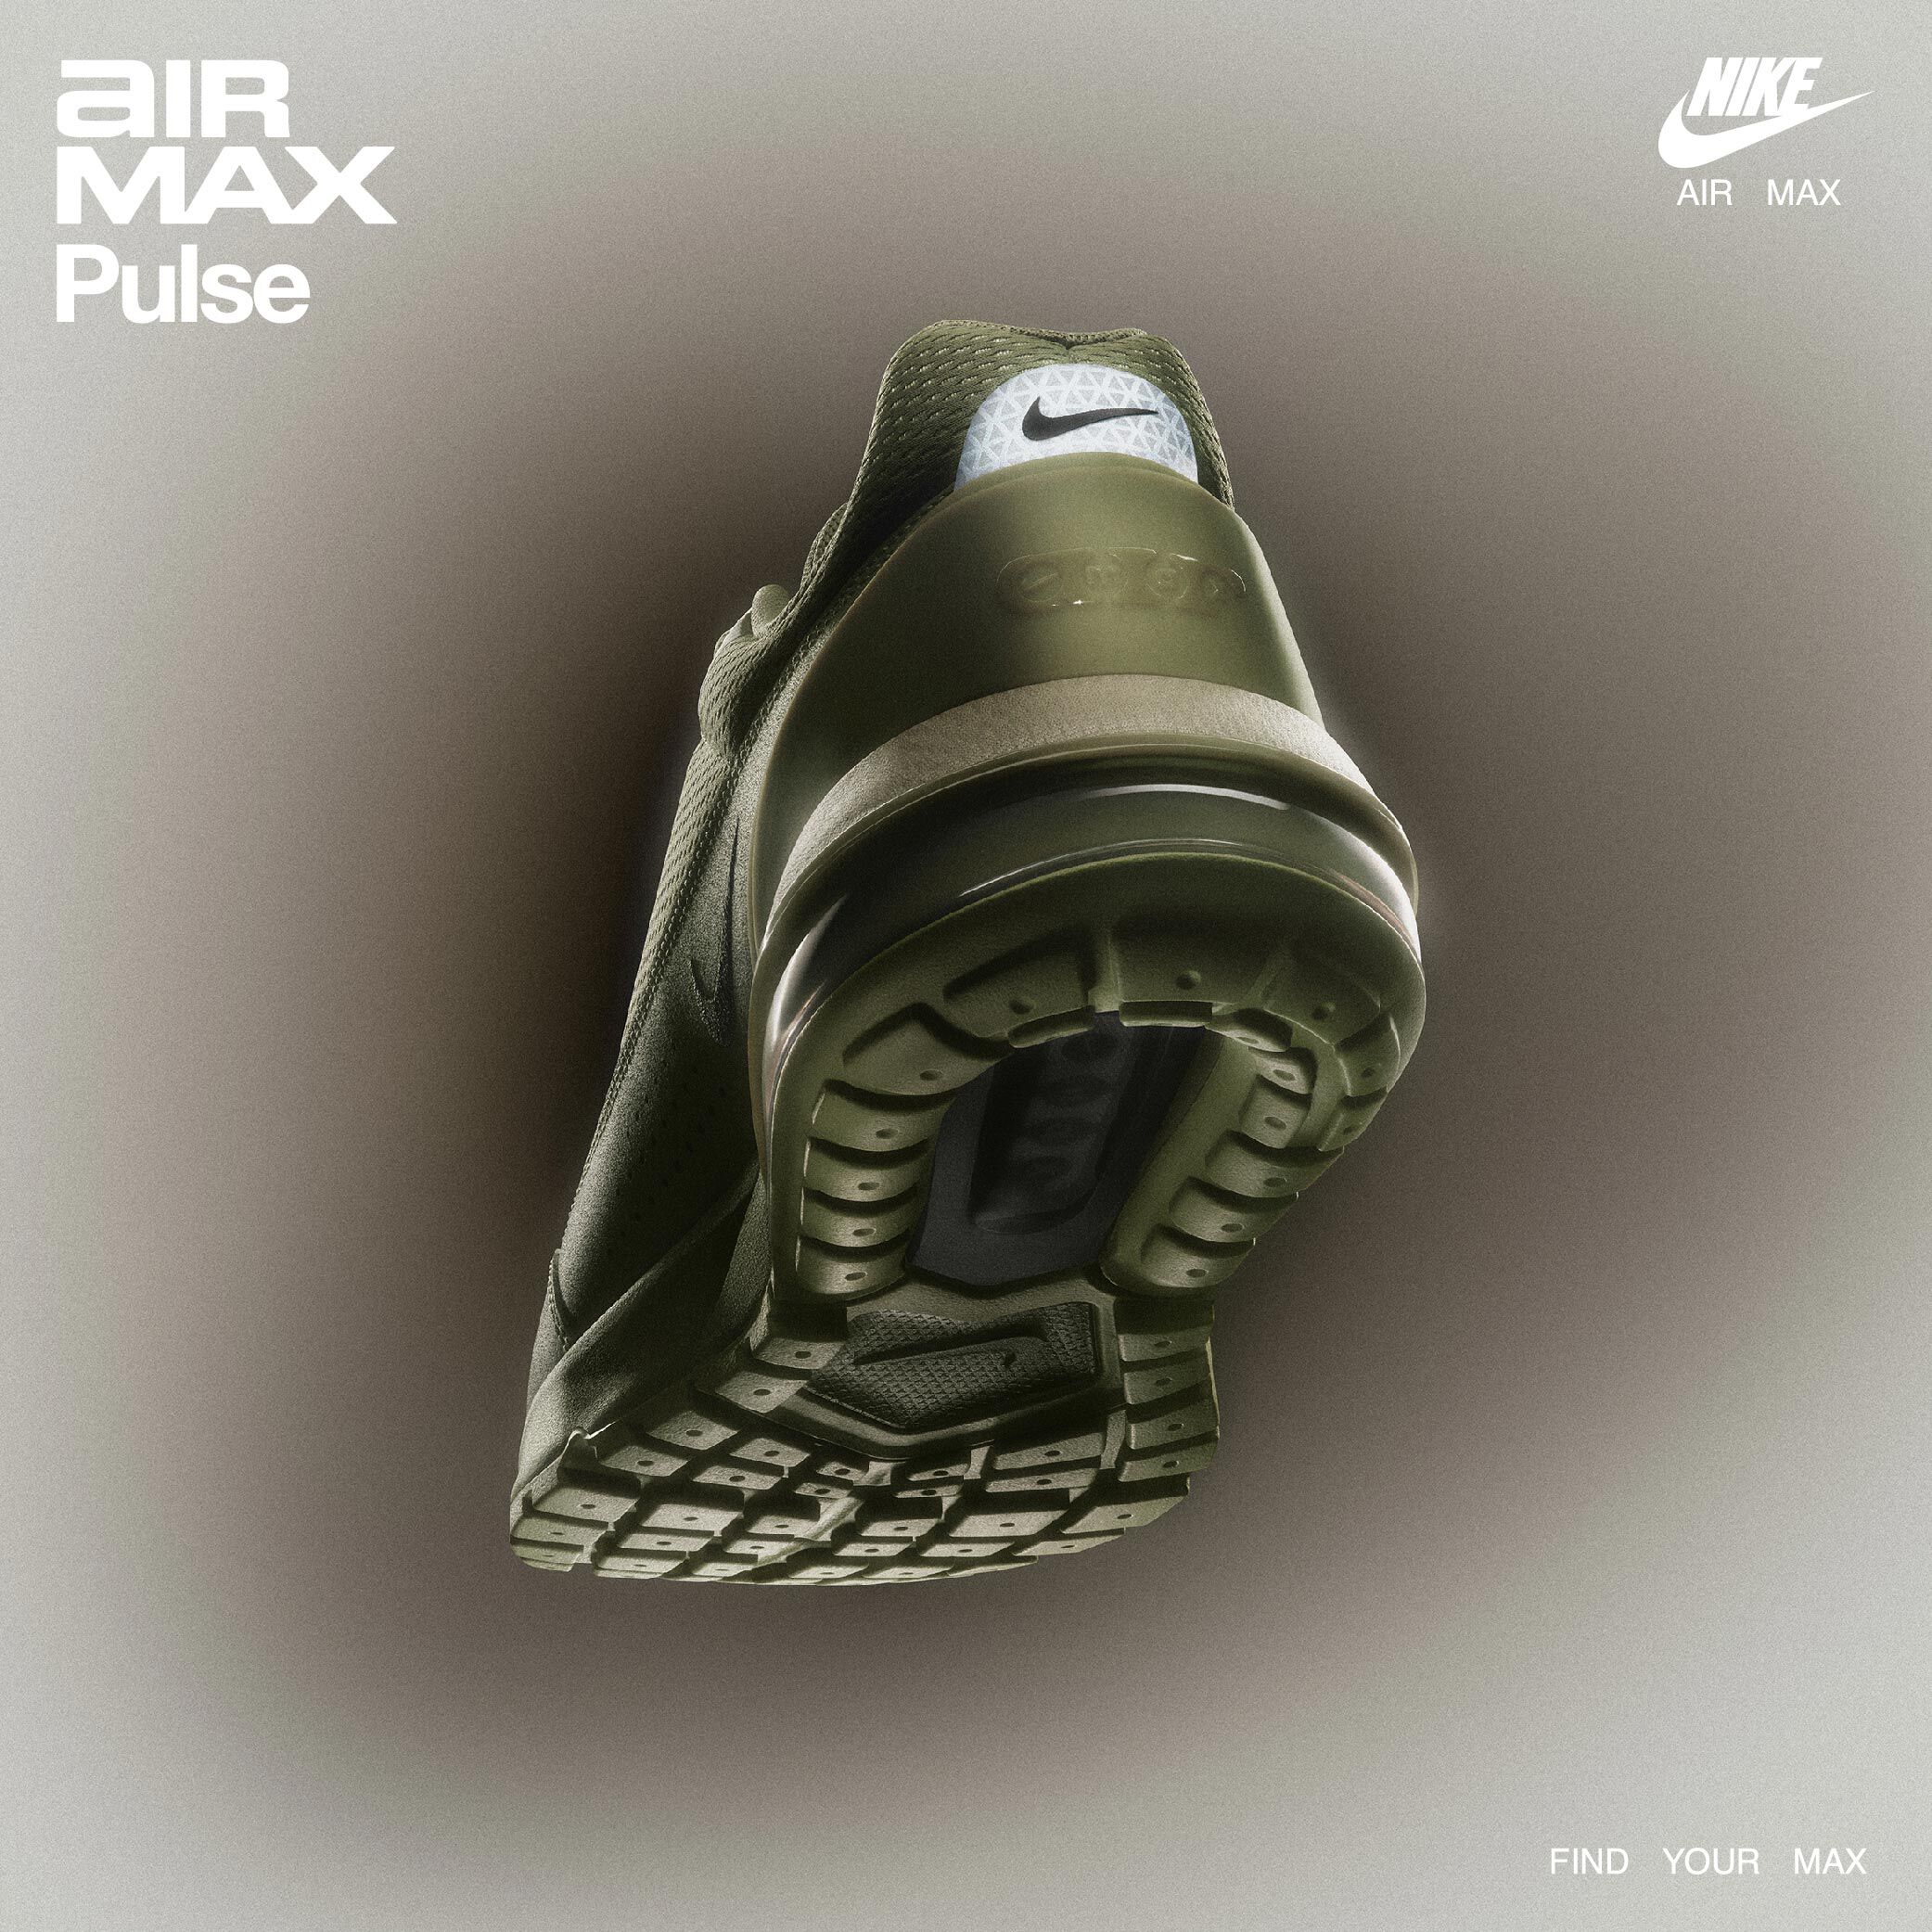 Air Max Pulse